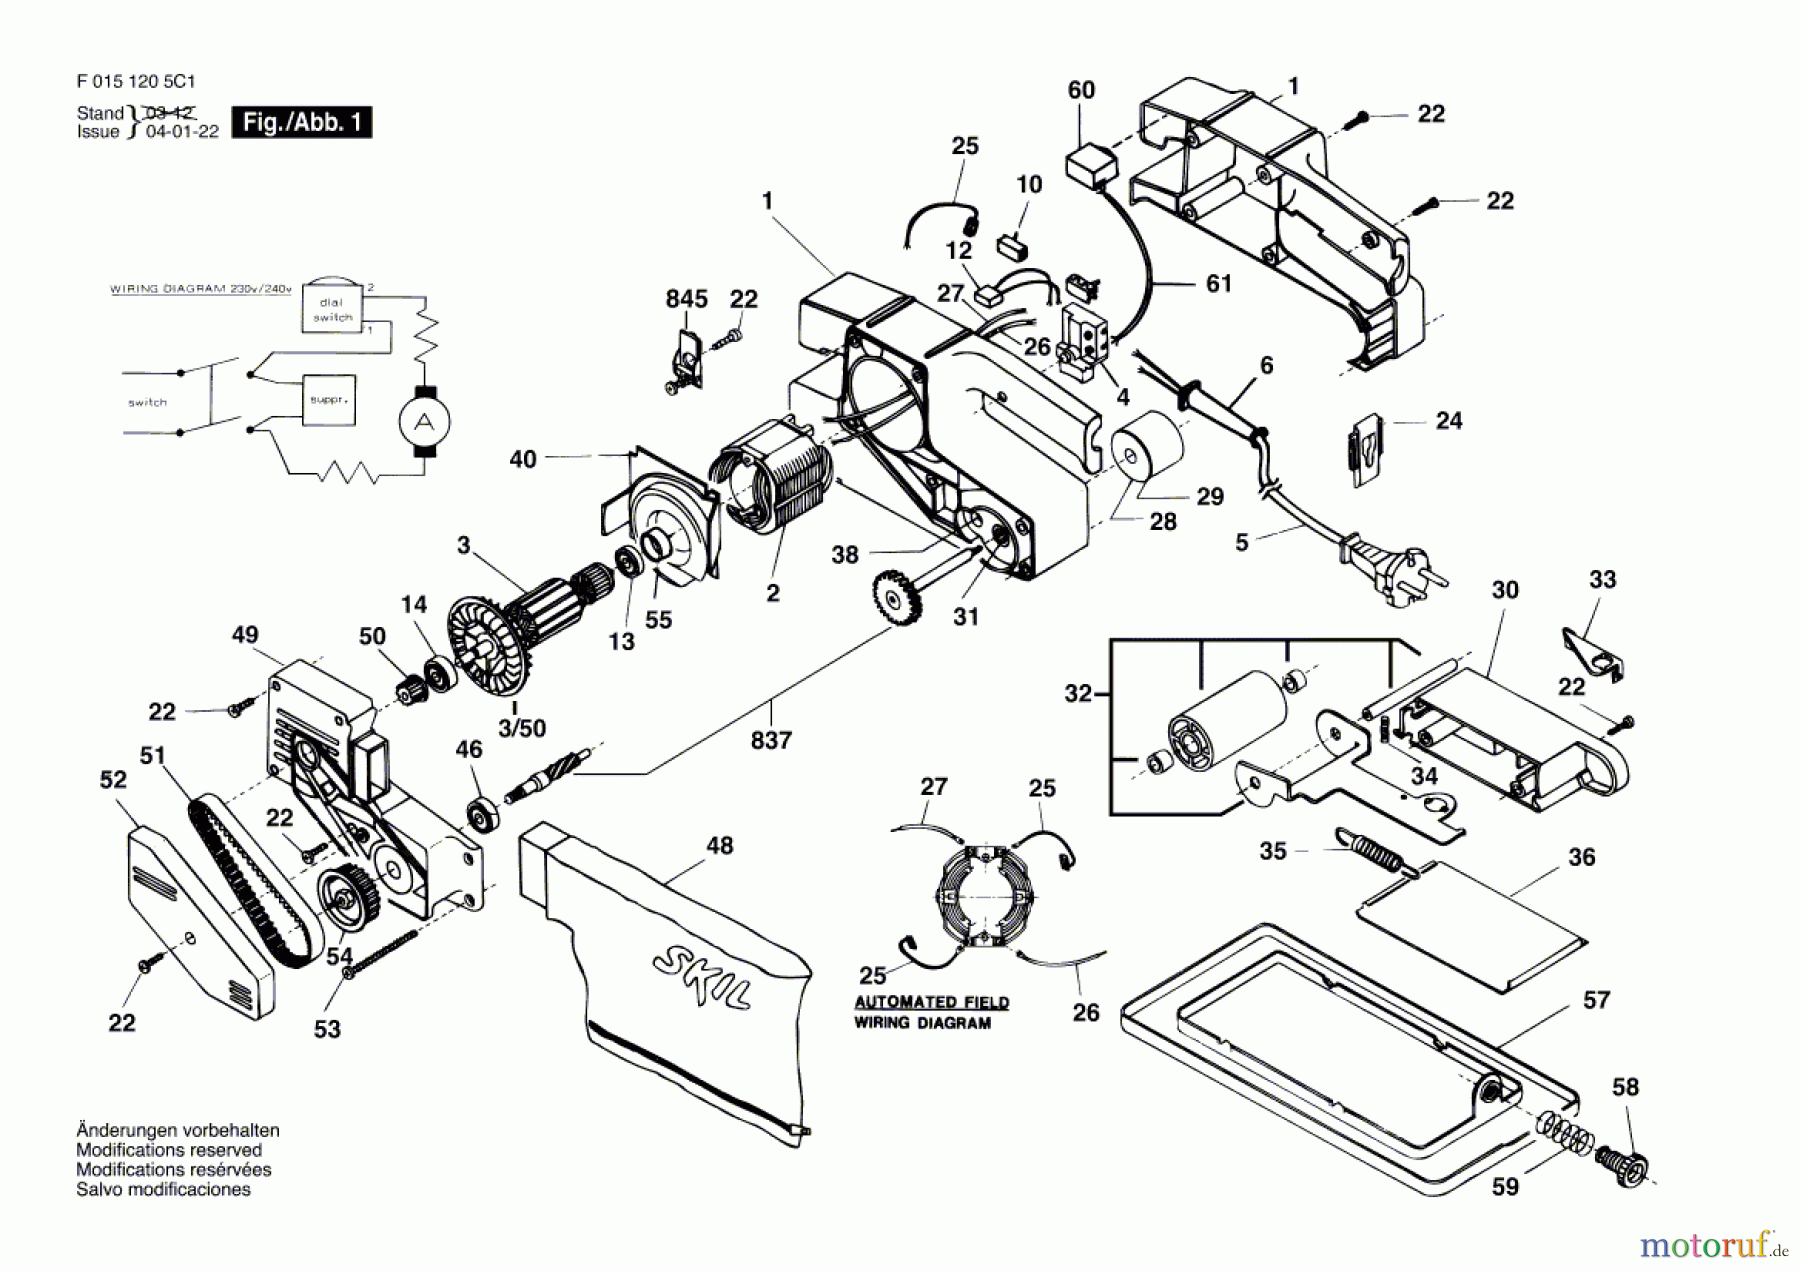  Bosch Werkzeug Bandschleifer 1205H1 Seite 1